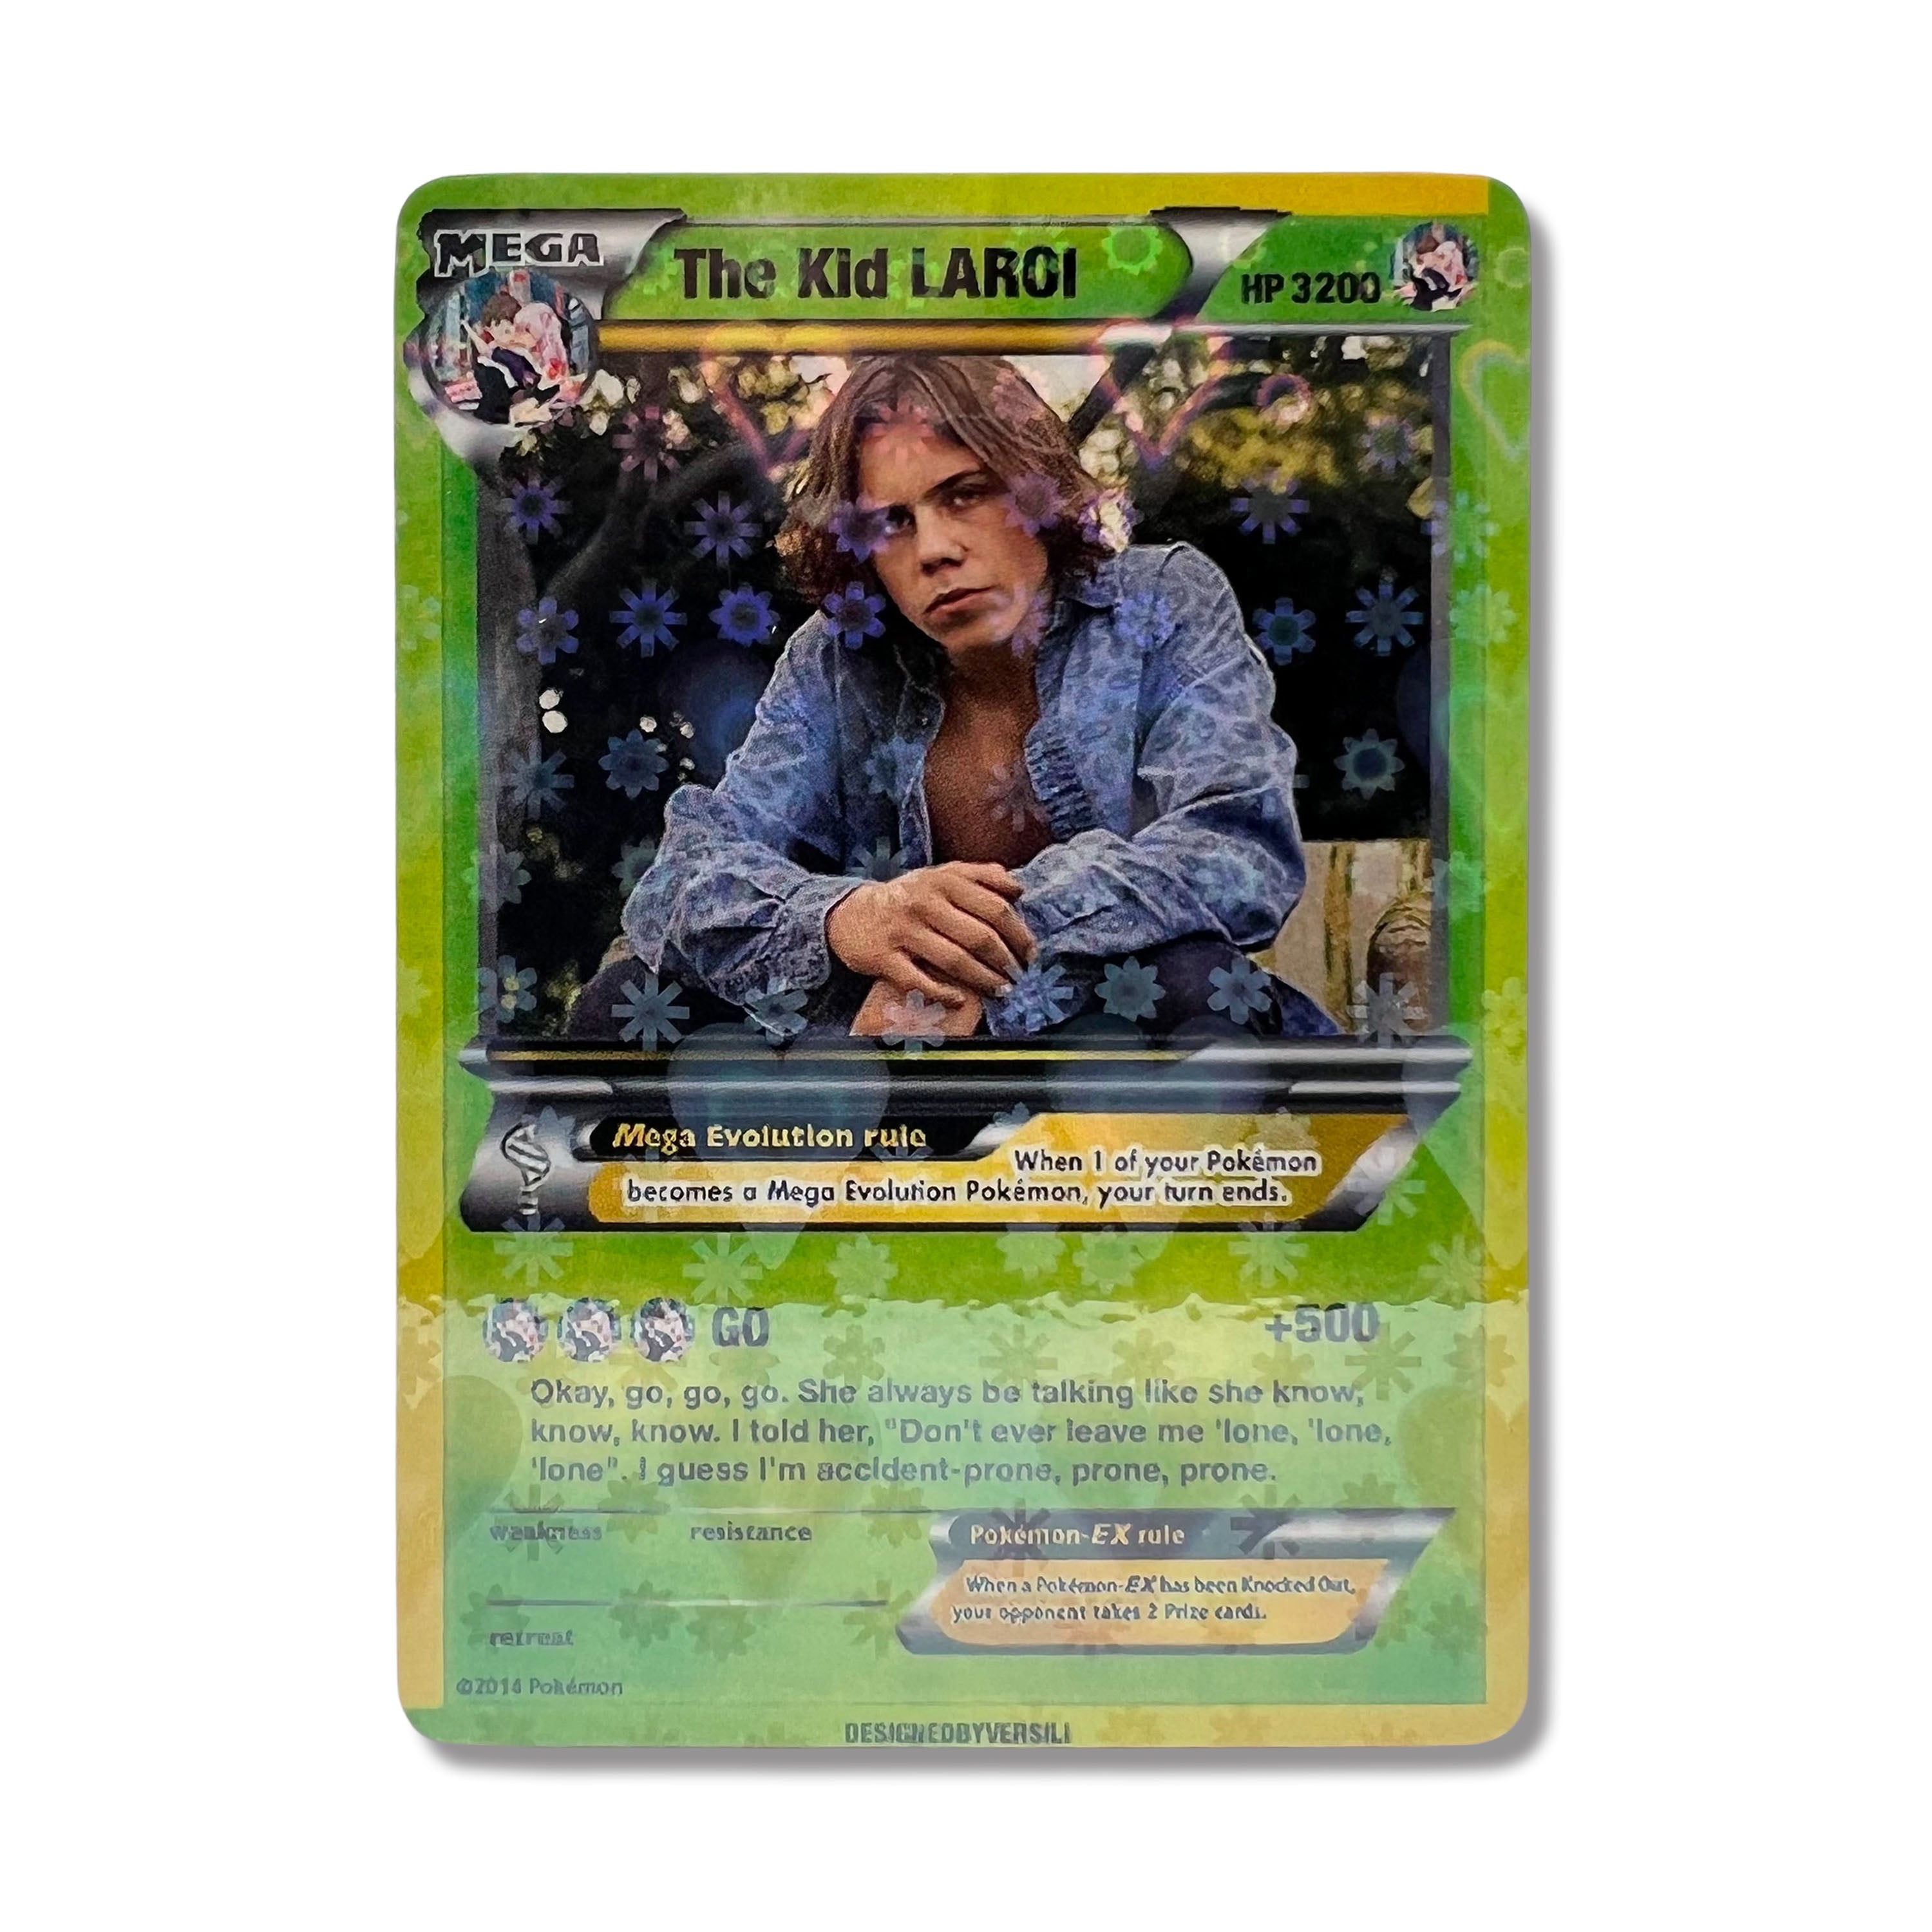 The Kid LAROI Pokémon Card